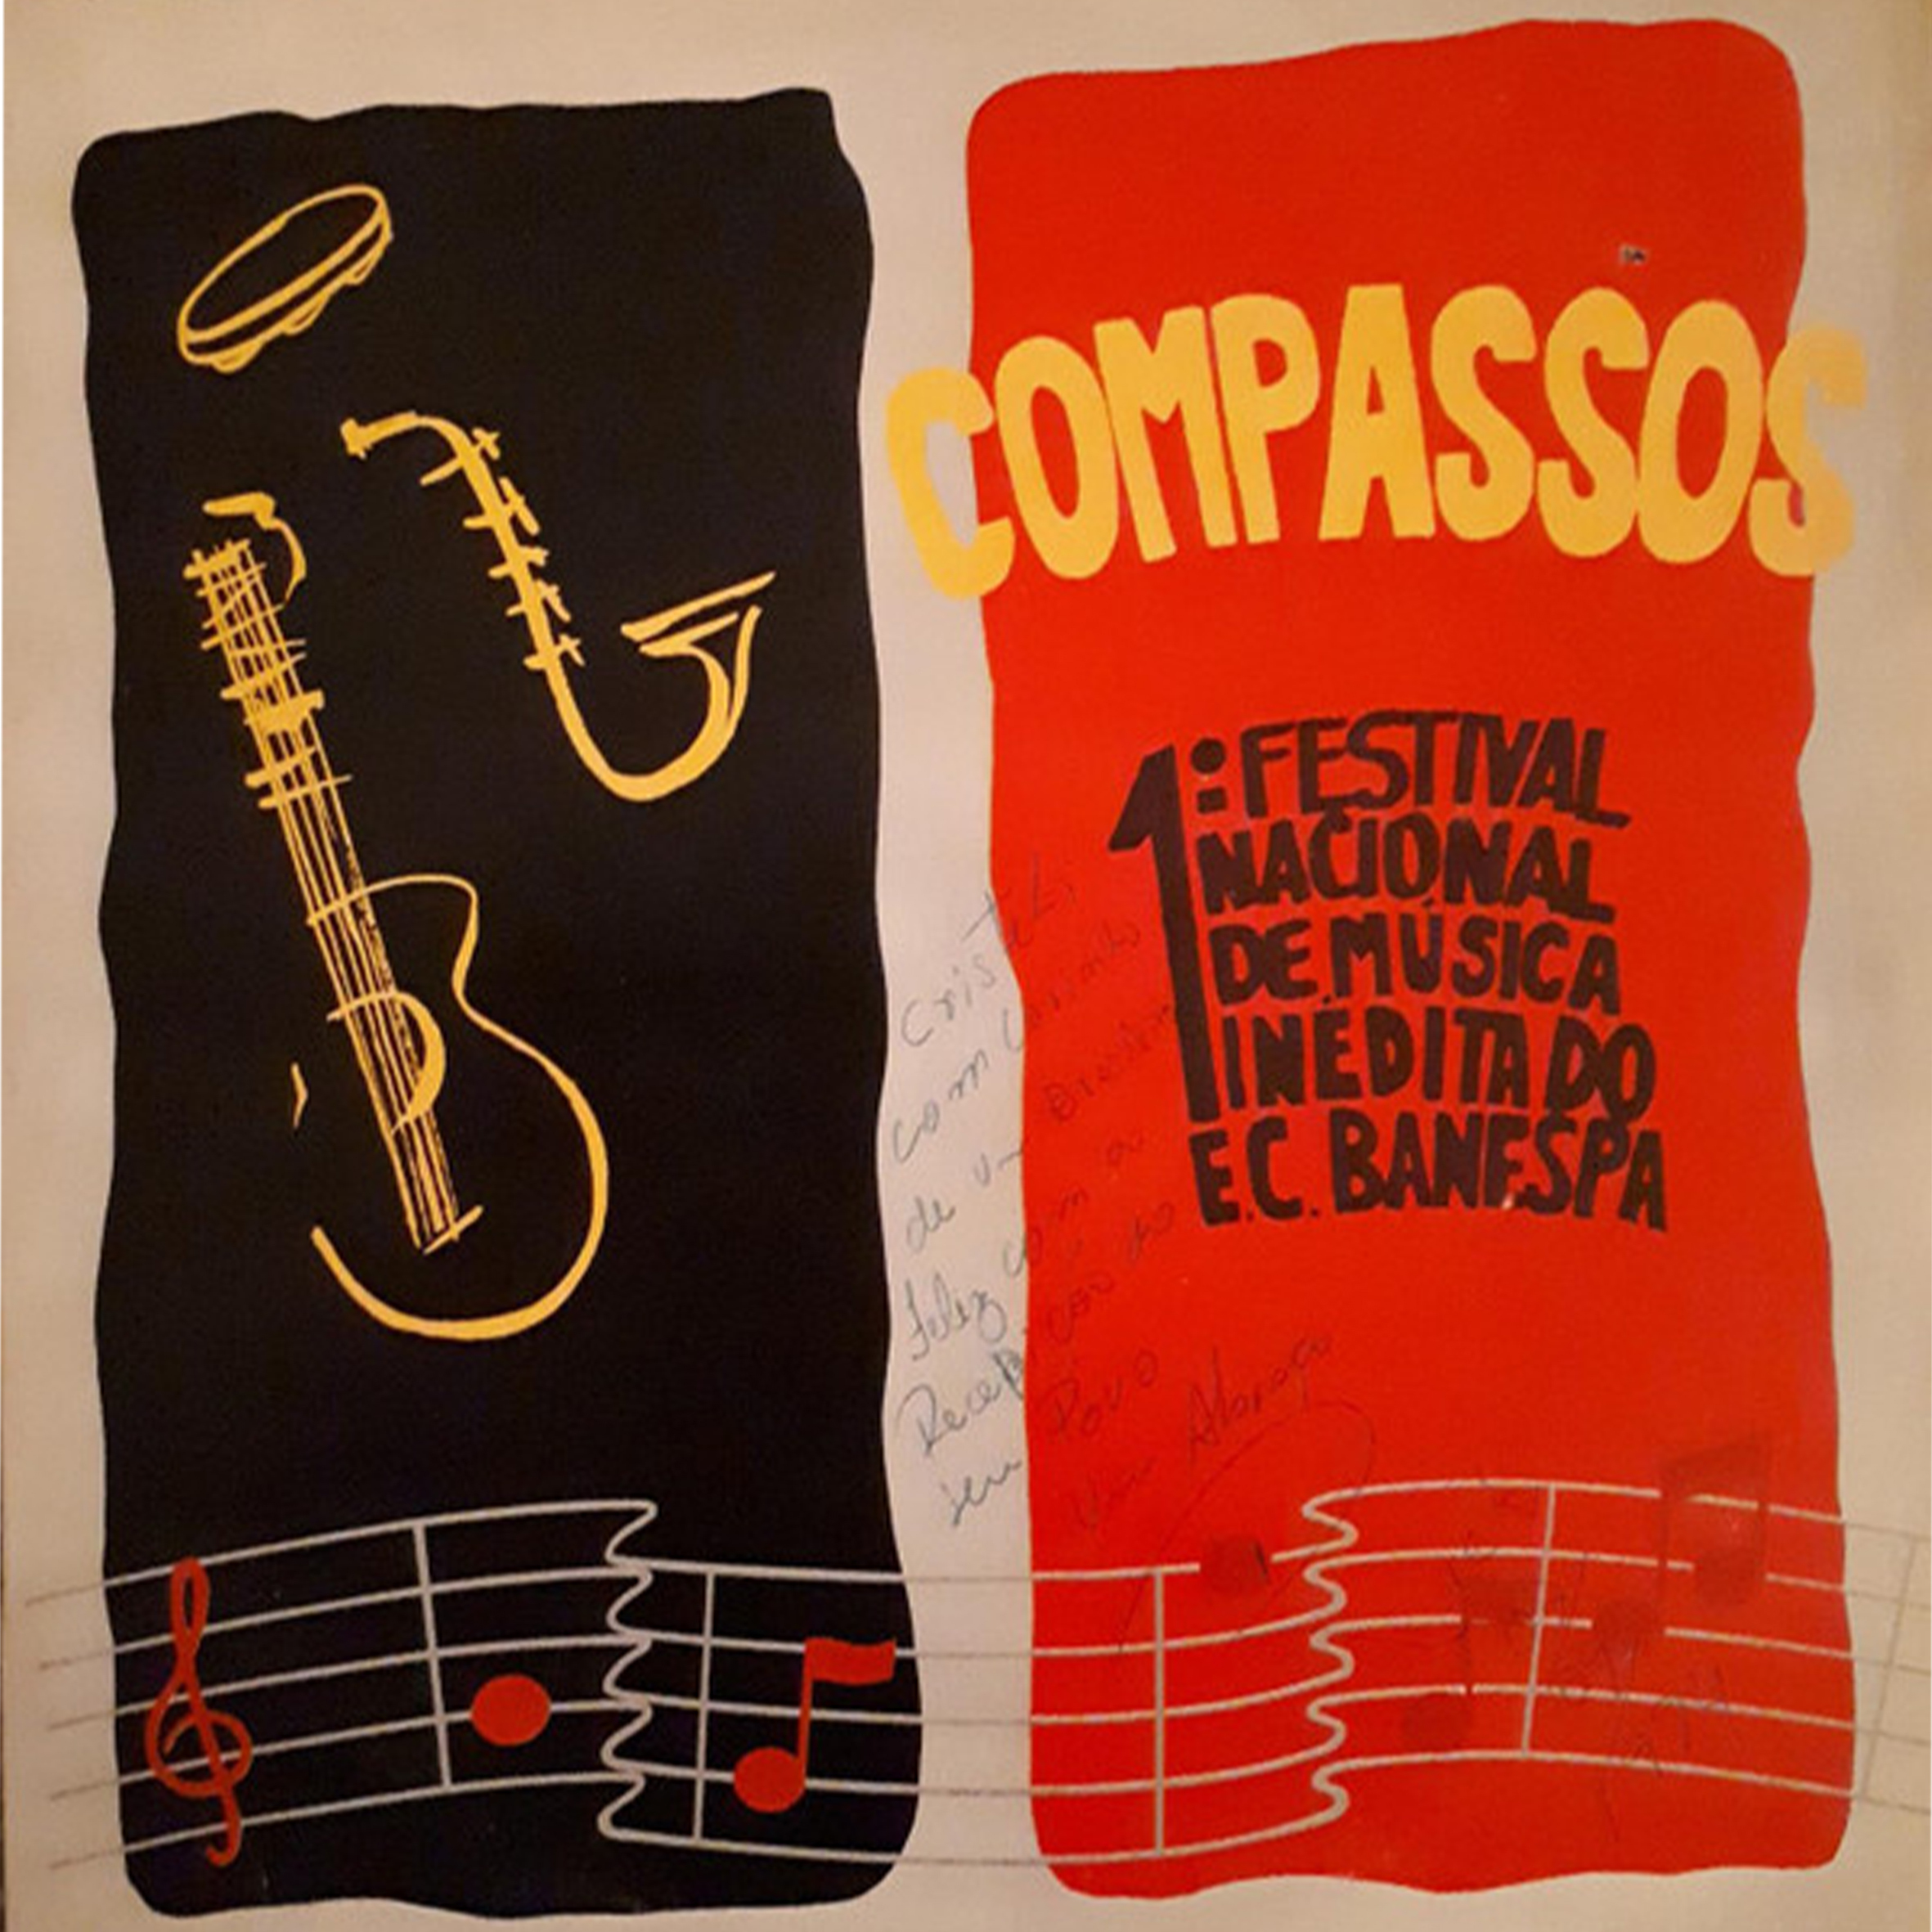 Vinil - Compassos - 1º Festival Nacional De Música Inédita Do E.C. Banespa